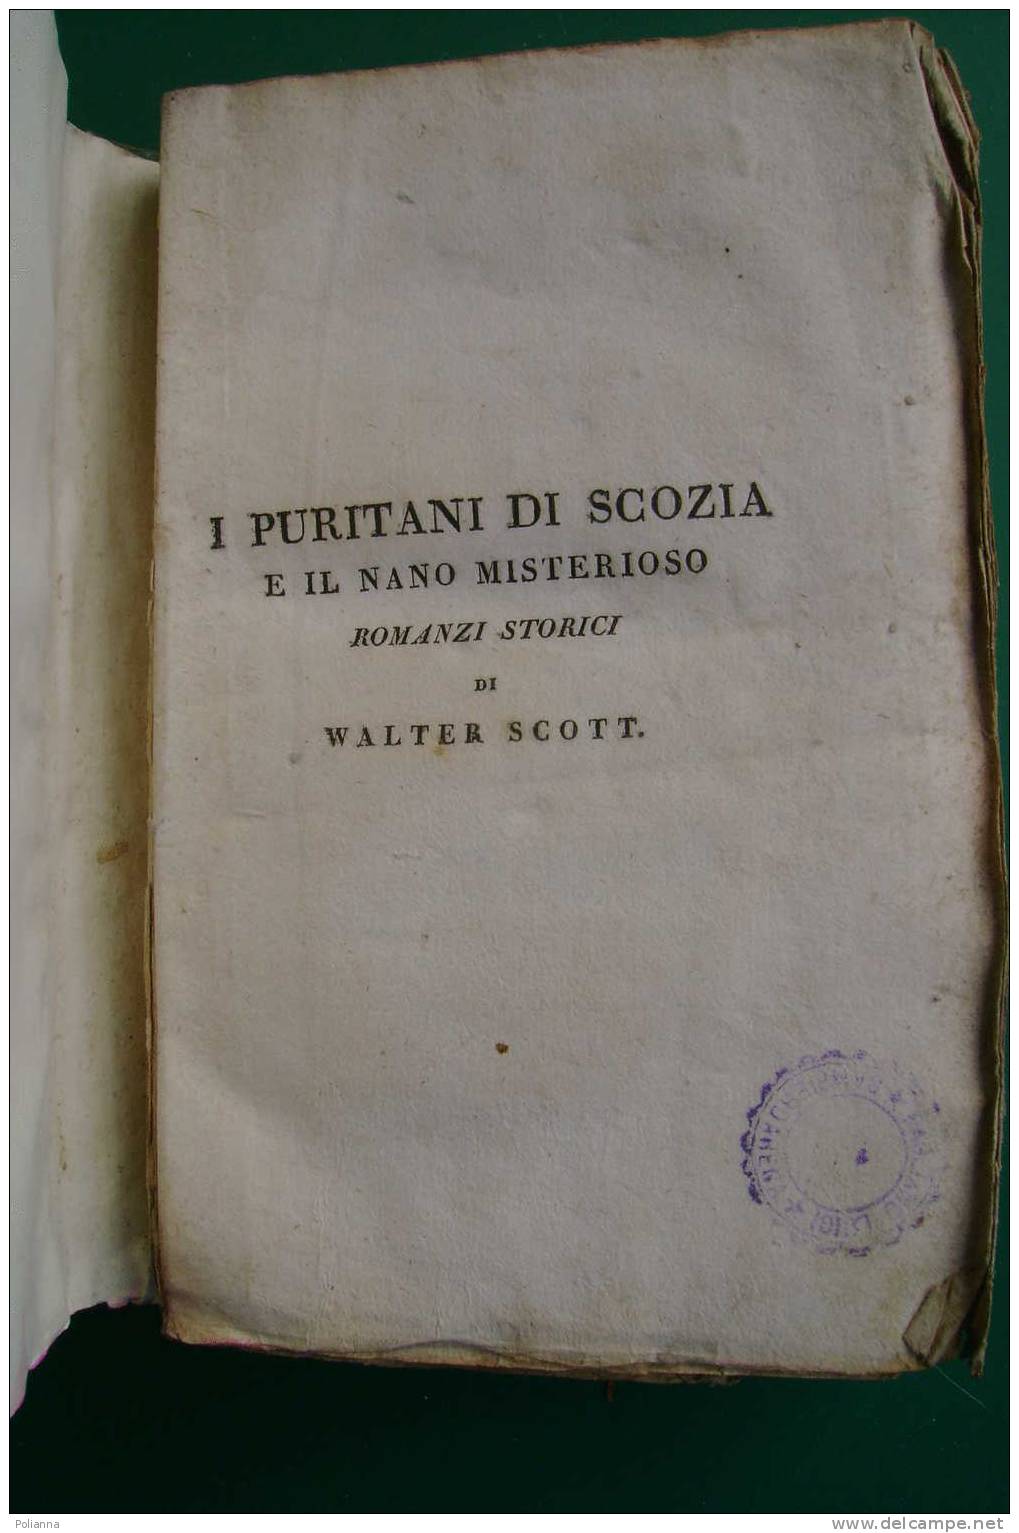 PDE/55 W.Scott I PURITANI DI SCOZIA E IL NANO MISTERIOSO Tomo III - Tipografia Di Commercio 1822 - Old